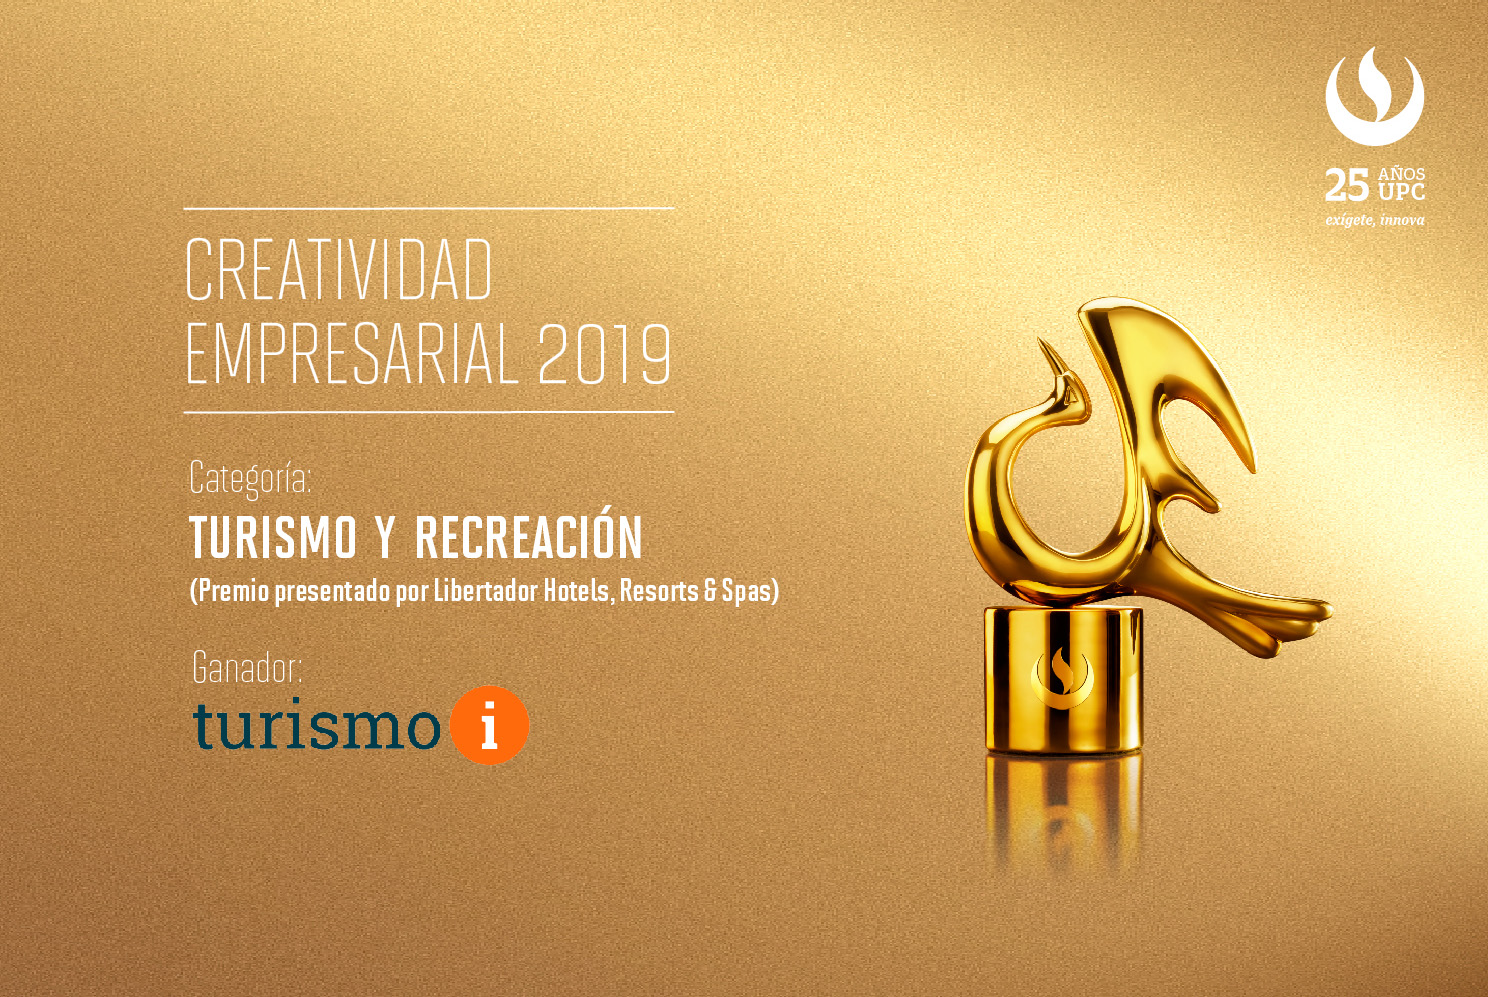 Creatividad Empresarial 2019: TURISMOI es el ganador en la categoría Turismo y Recreación